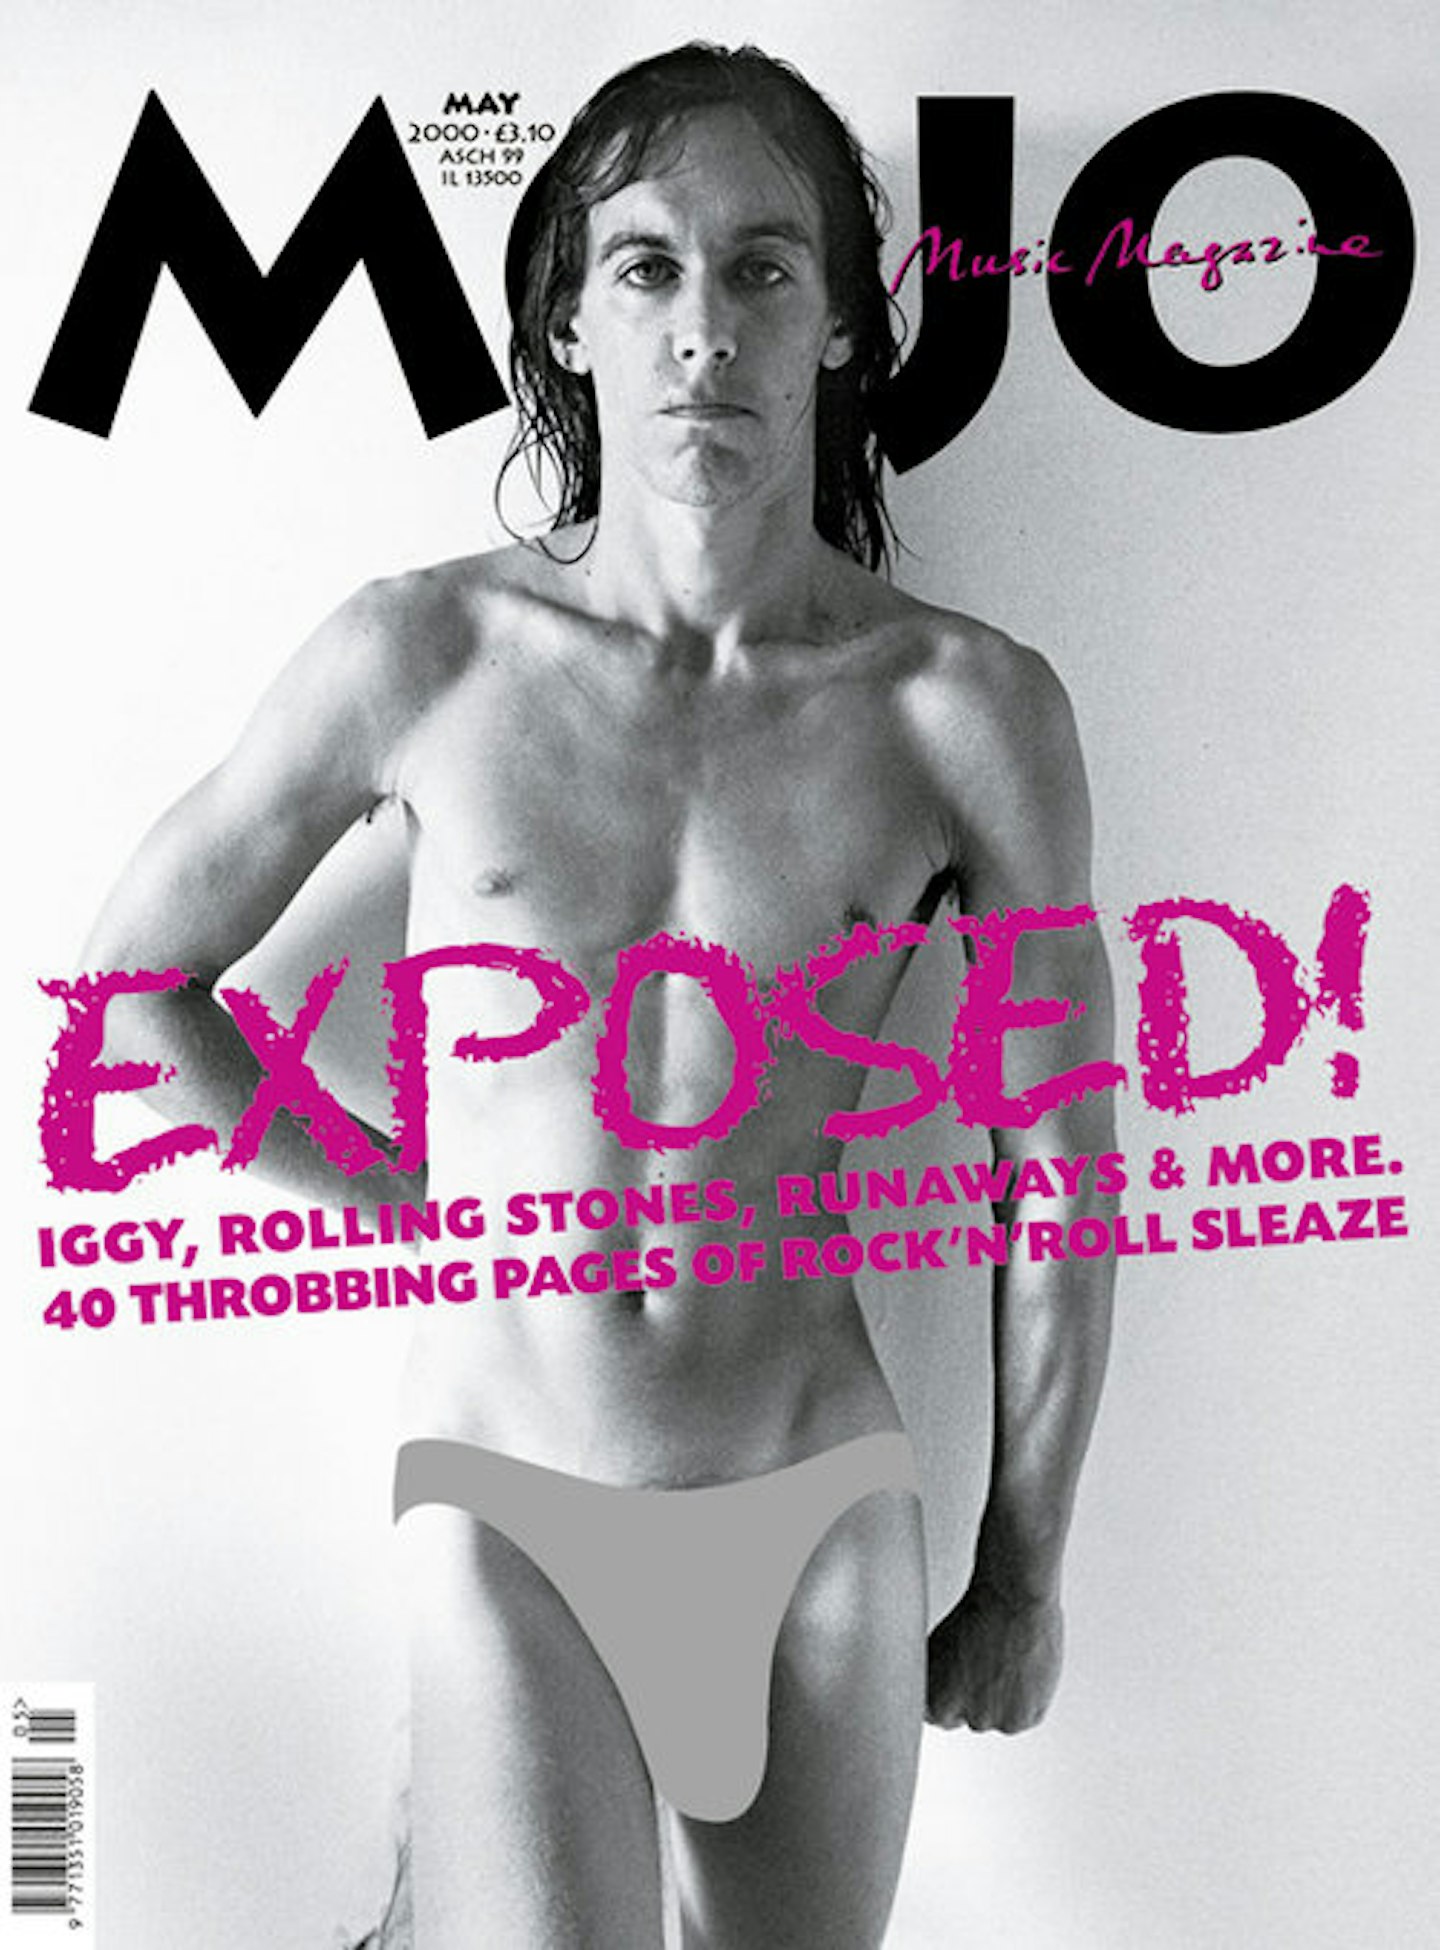 MOJO Issue 78 / May 2000